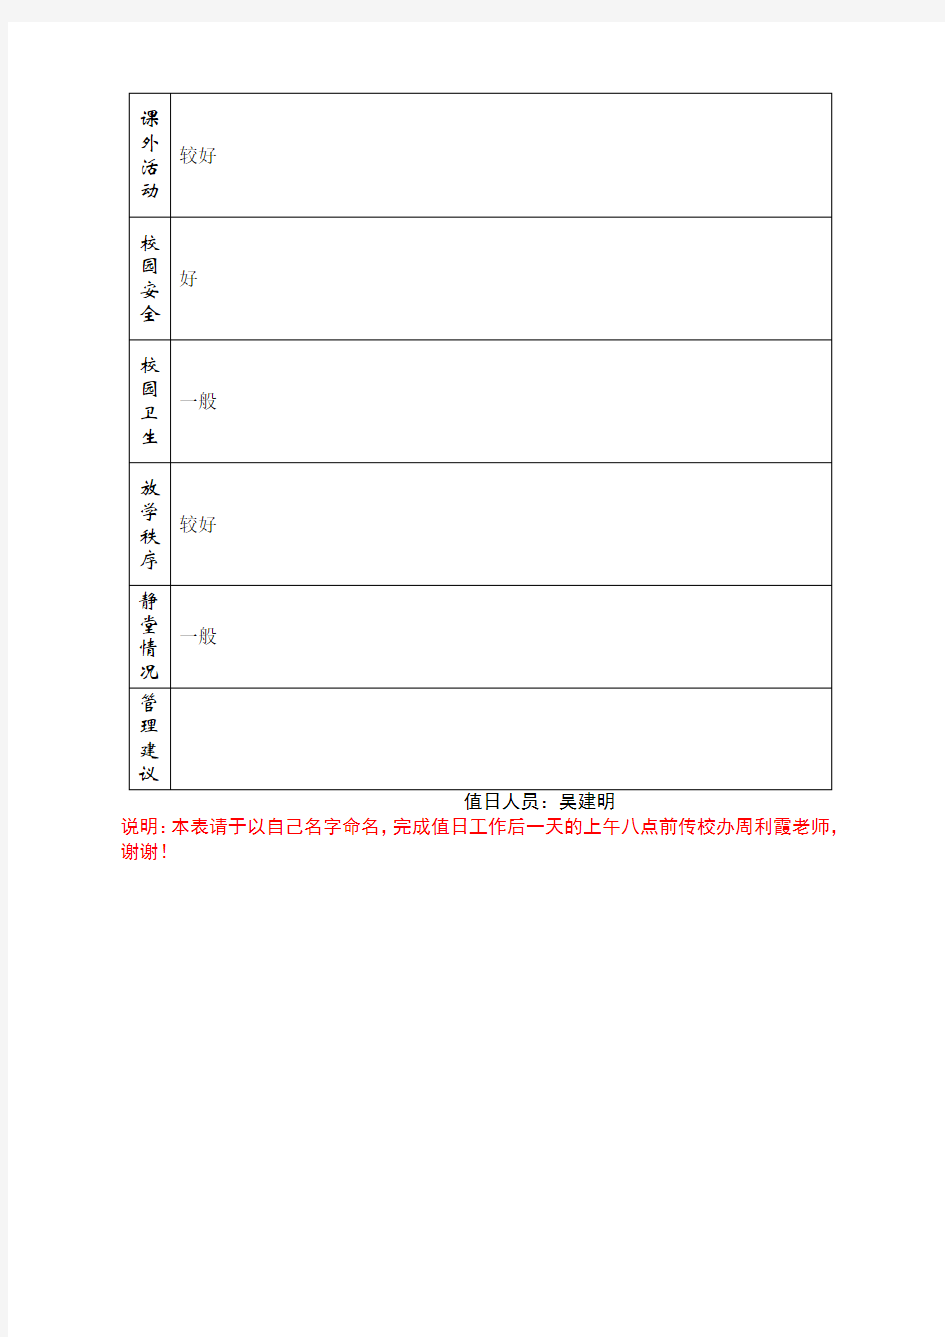 行政值日记录表(样张)